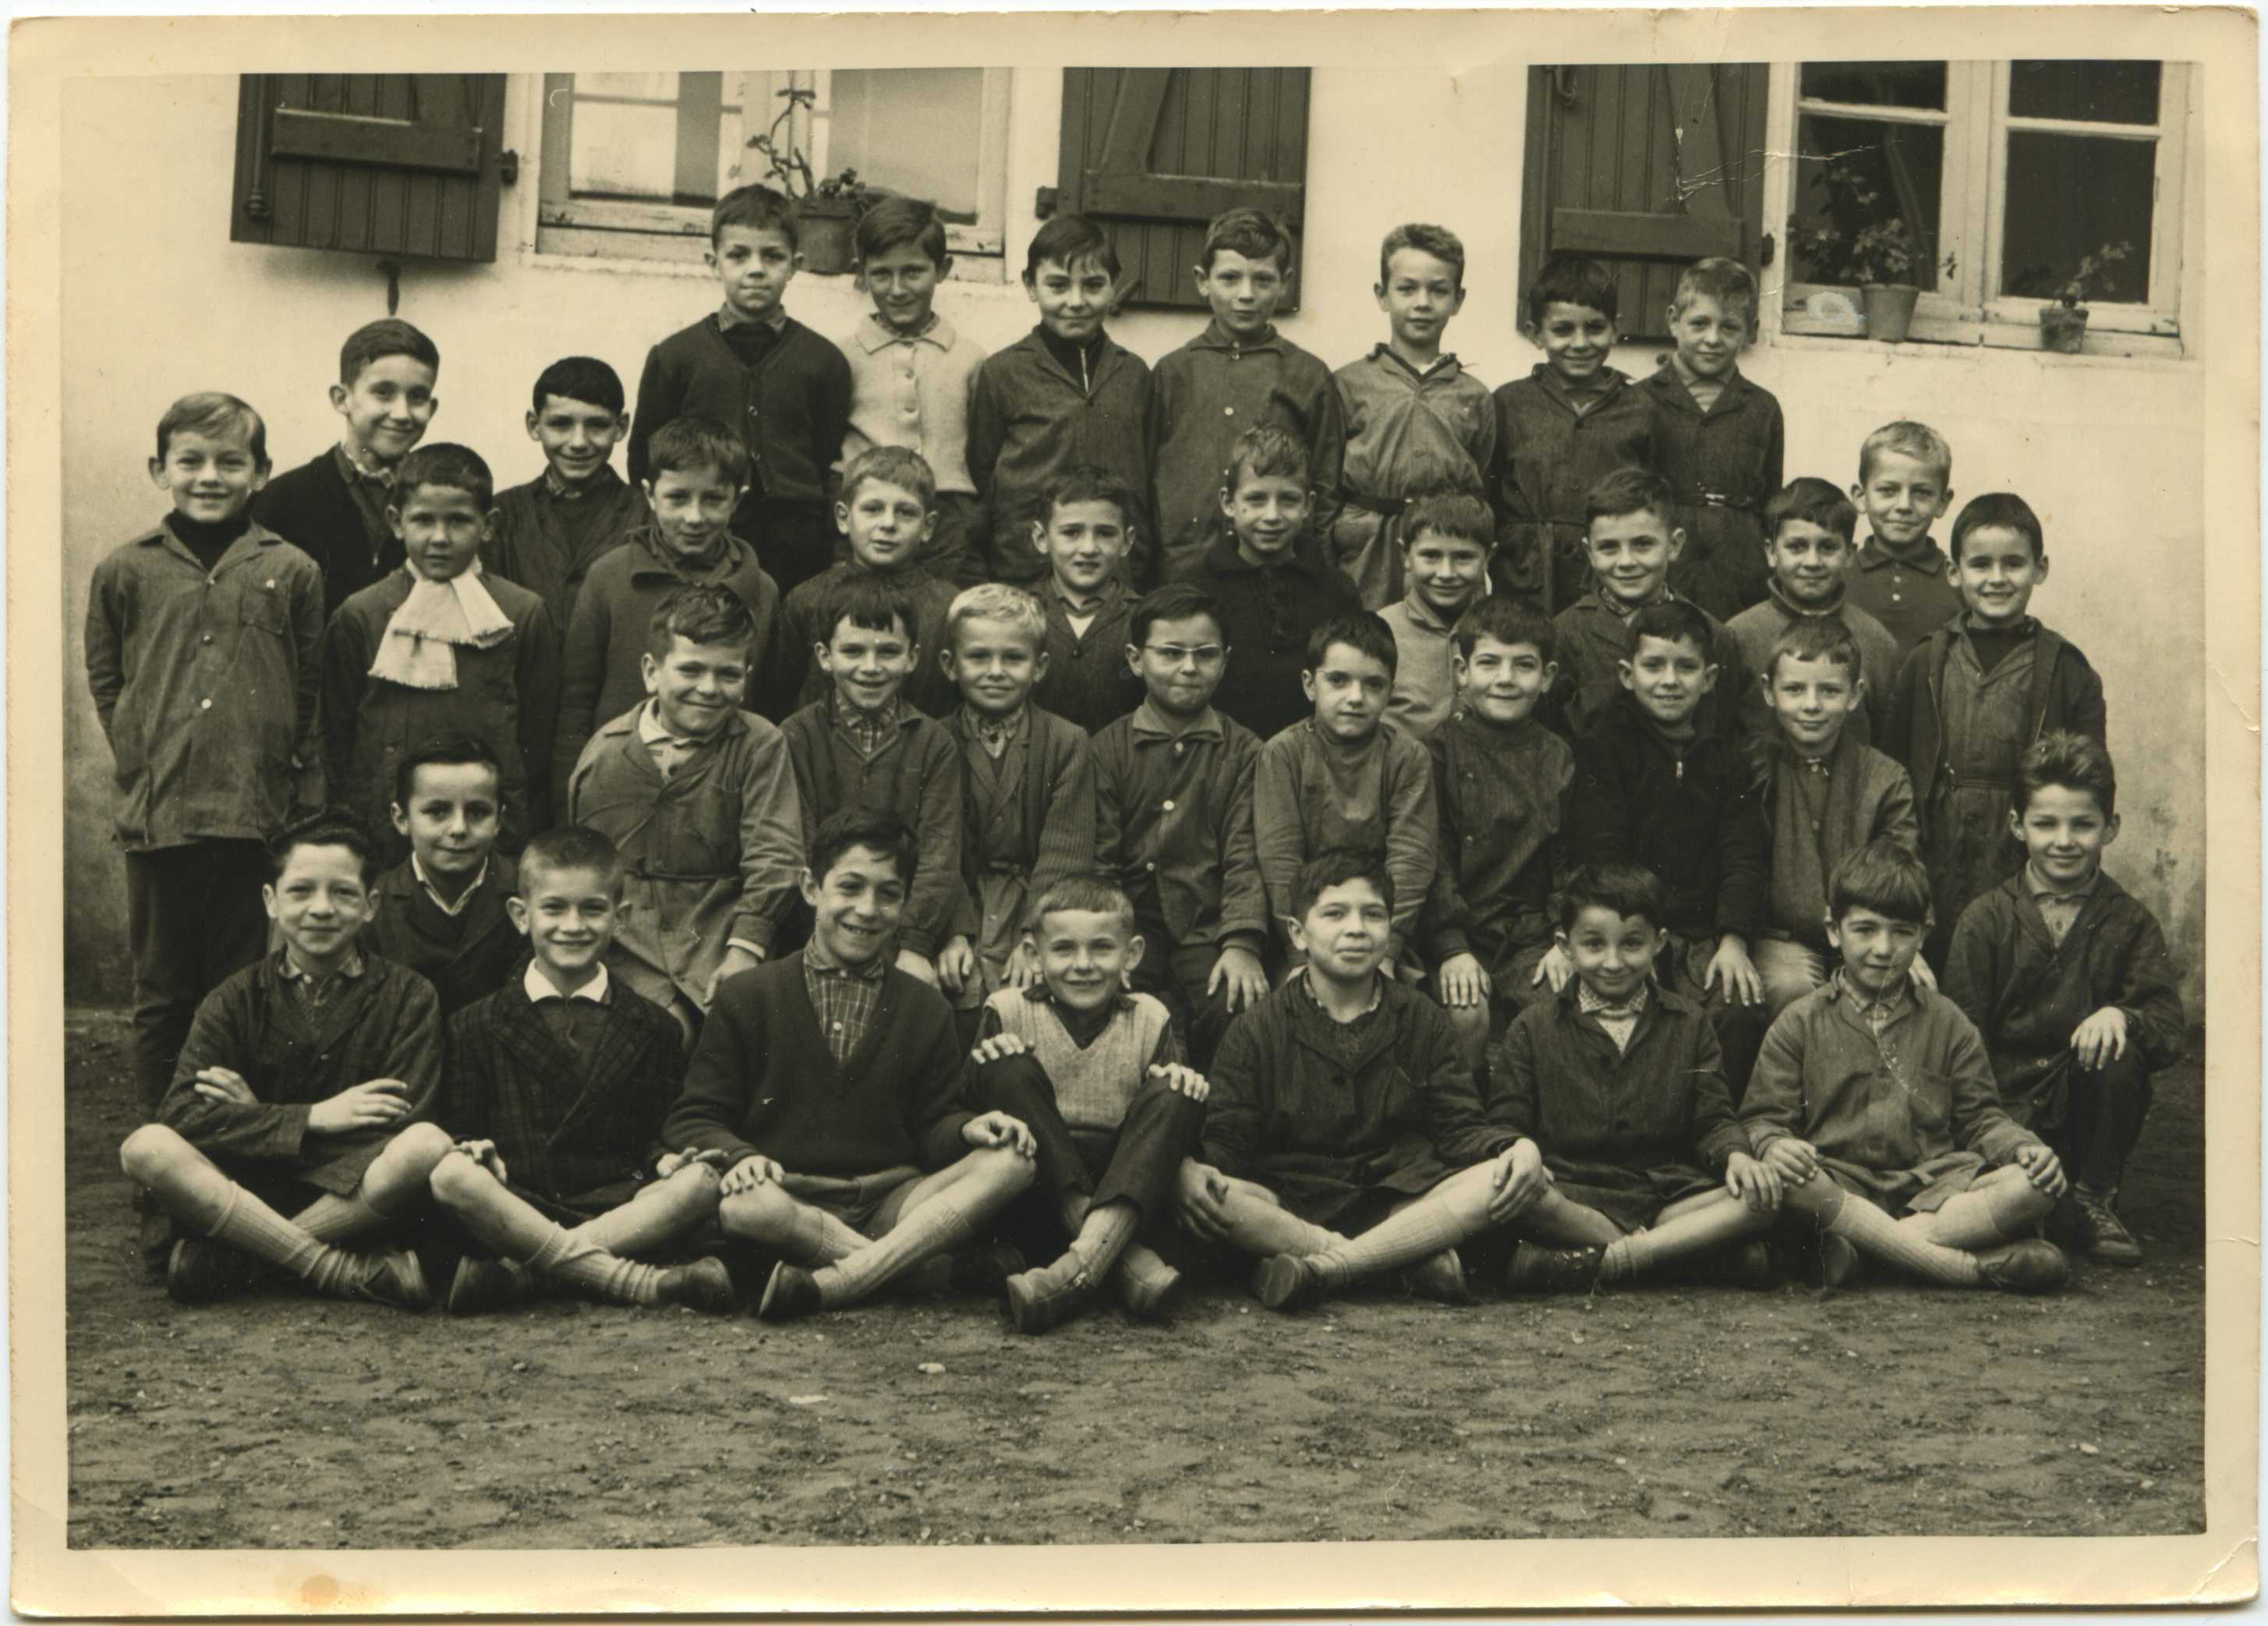 Dax - Ecole Saint Vincent - photo de classe - garçons ( peut-être 1961-1962 )